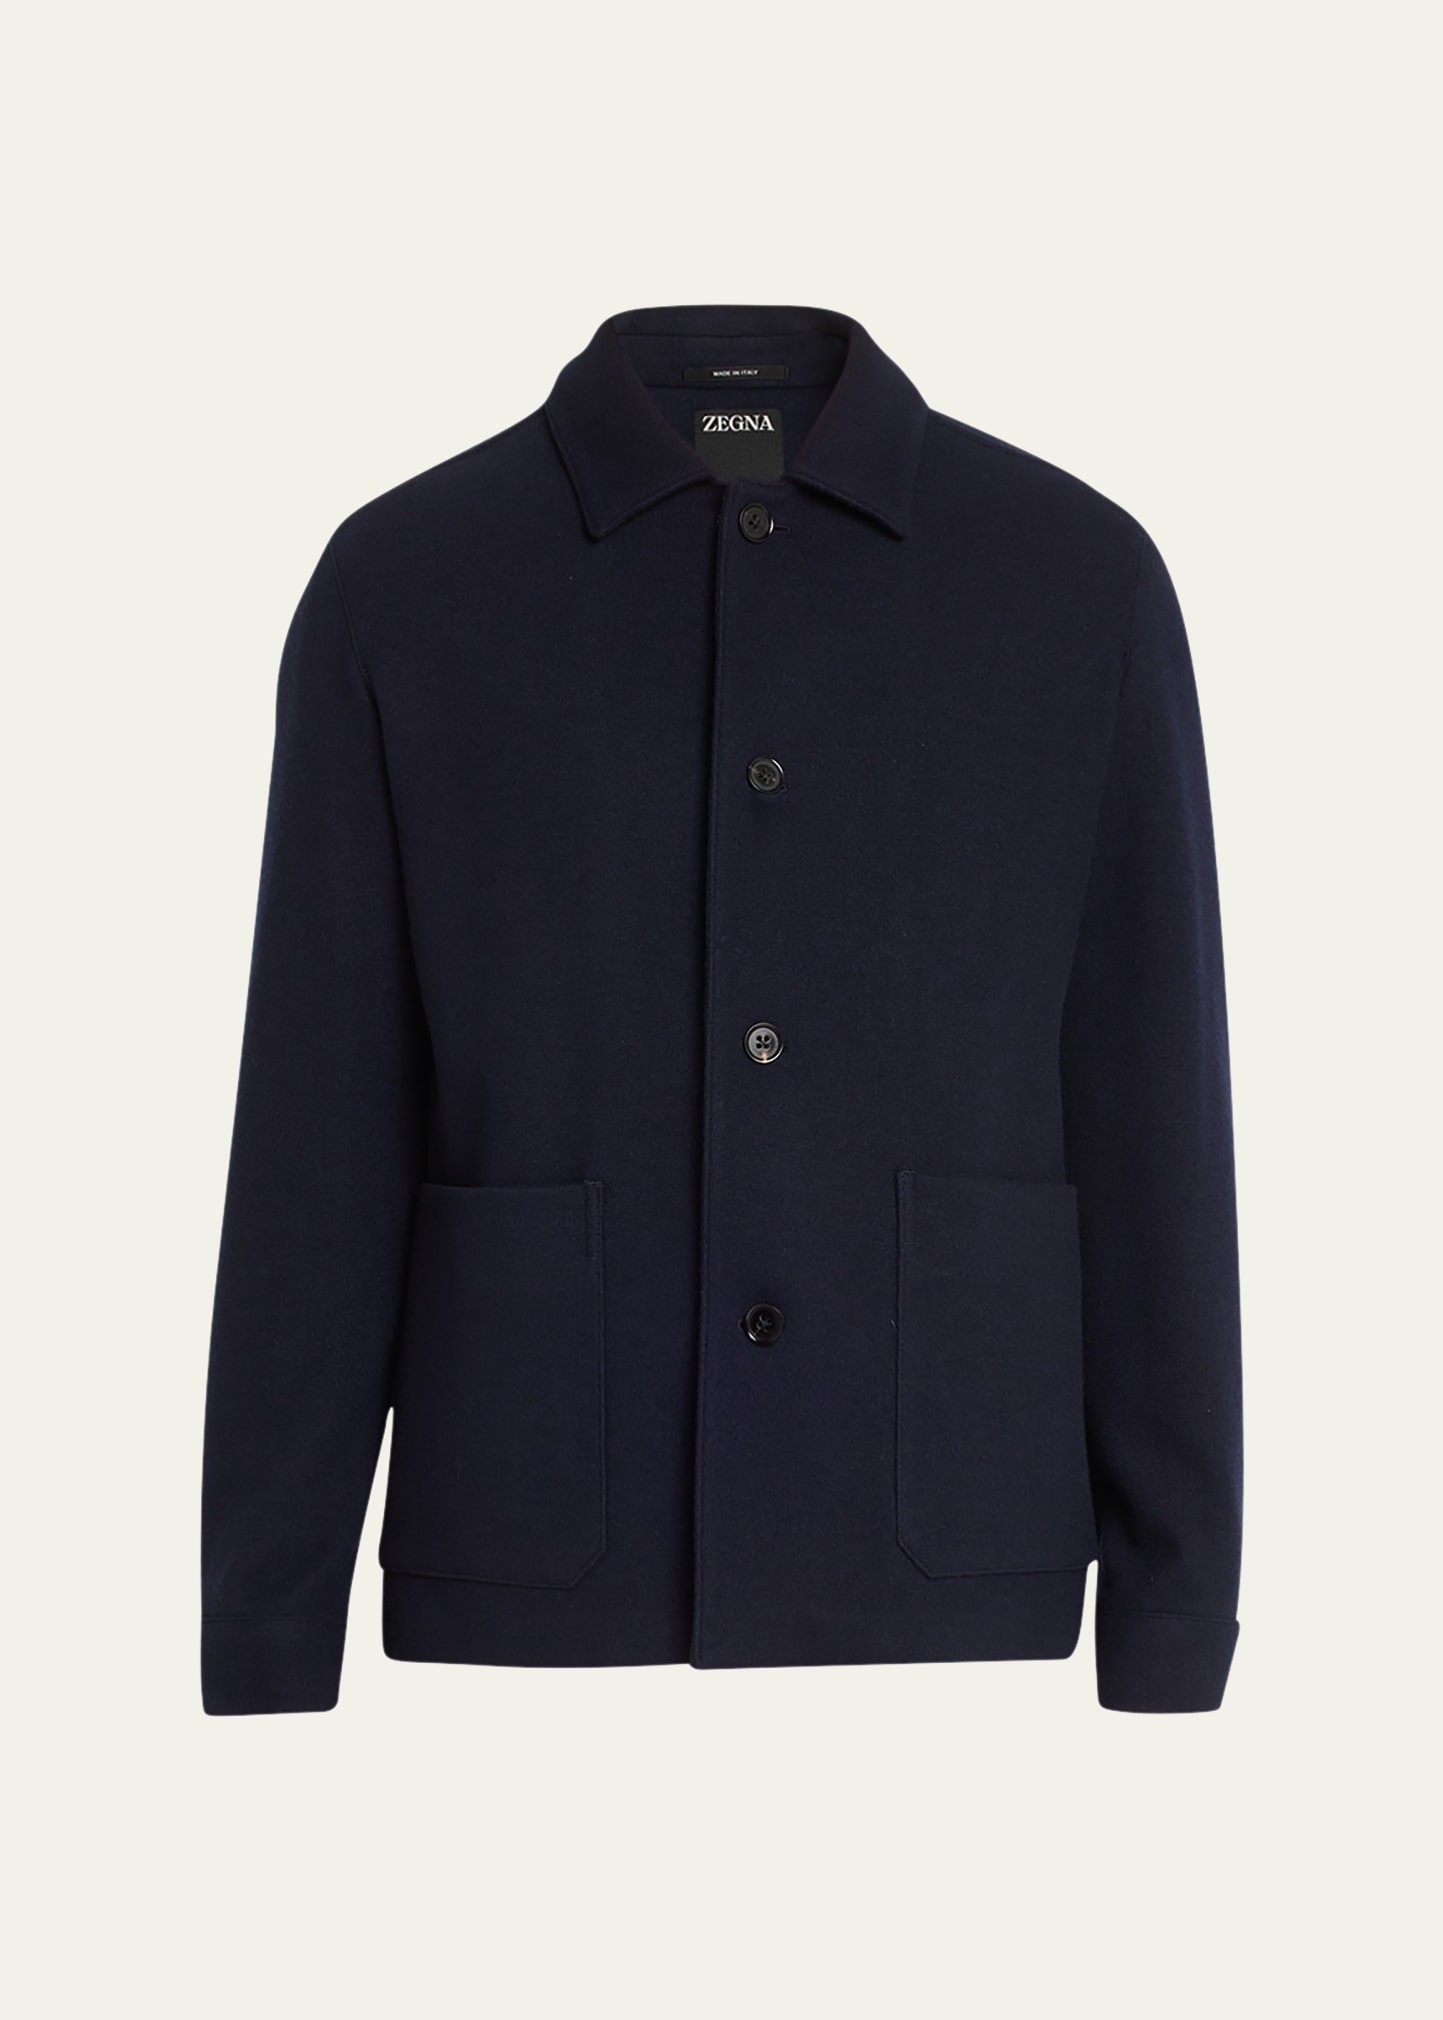 Men's Solid Cashmere Chore Jacket